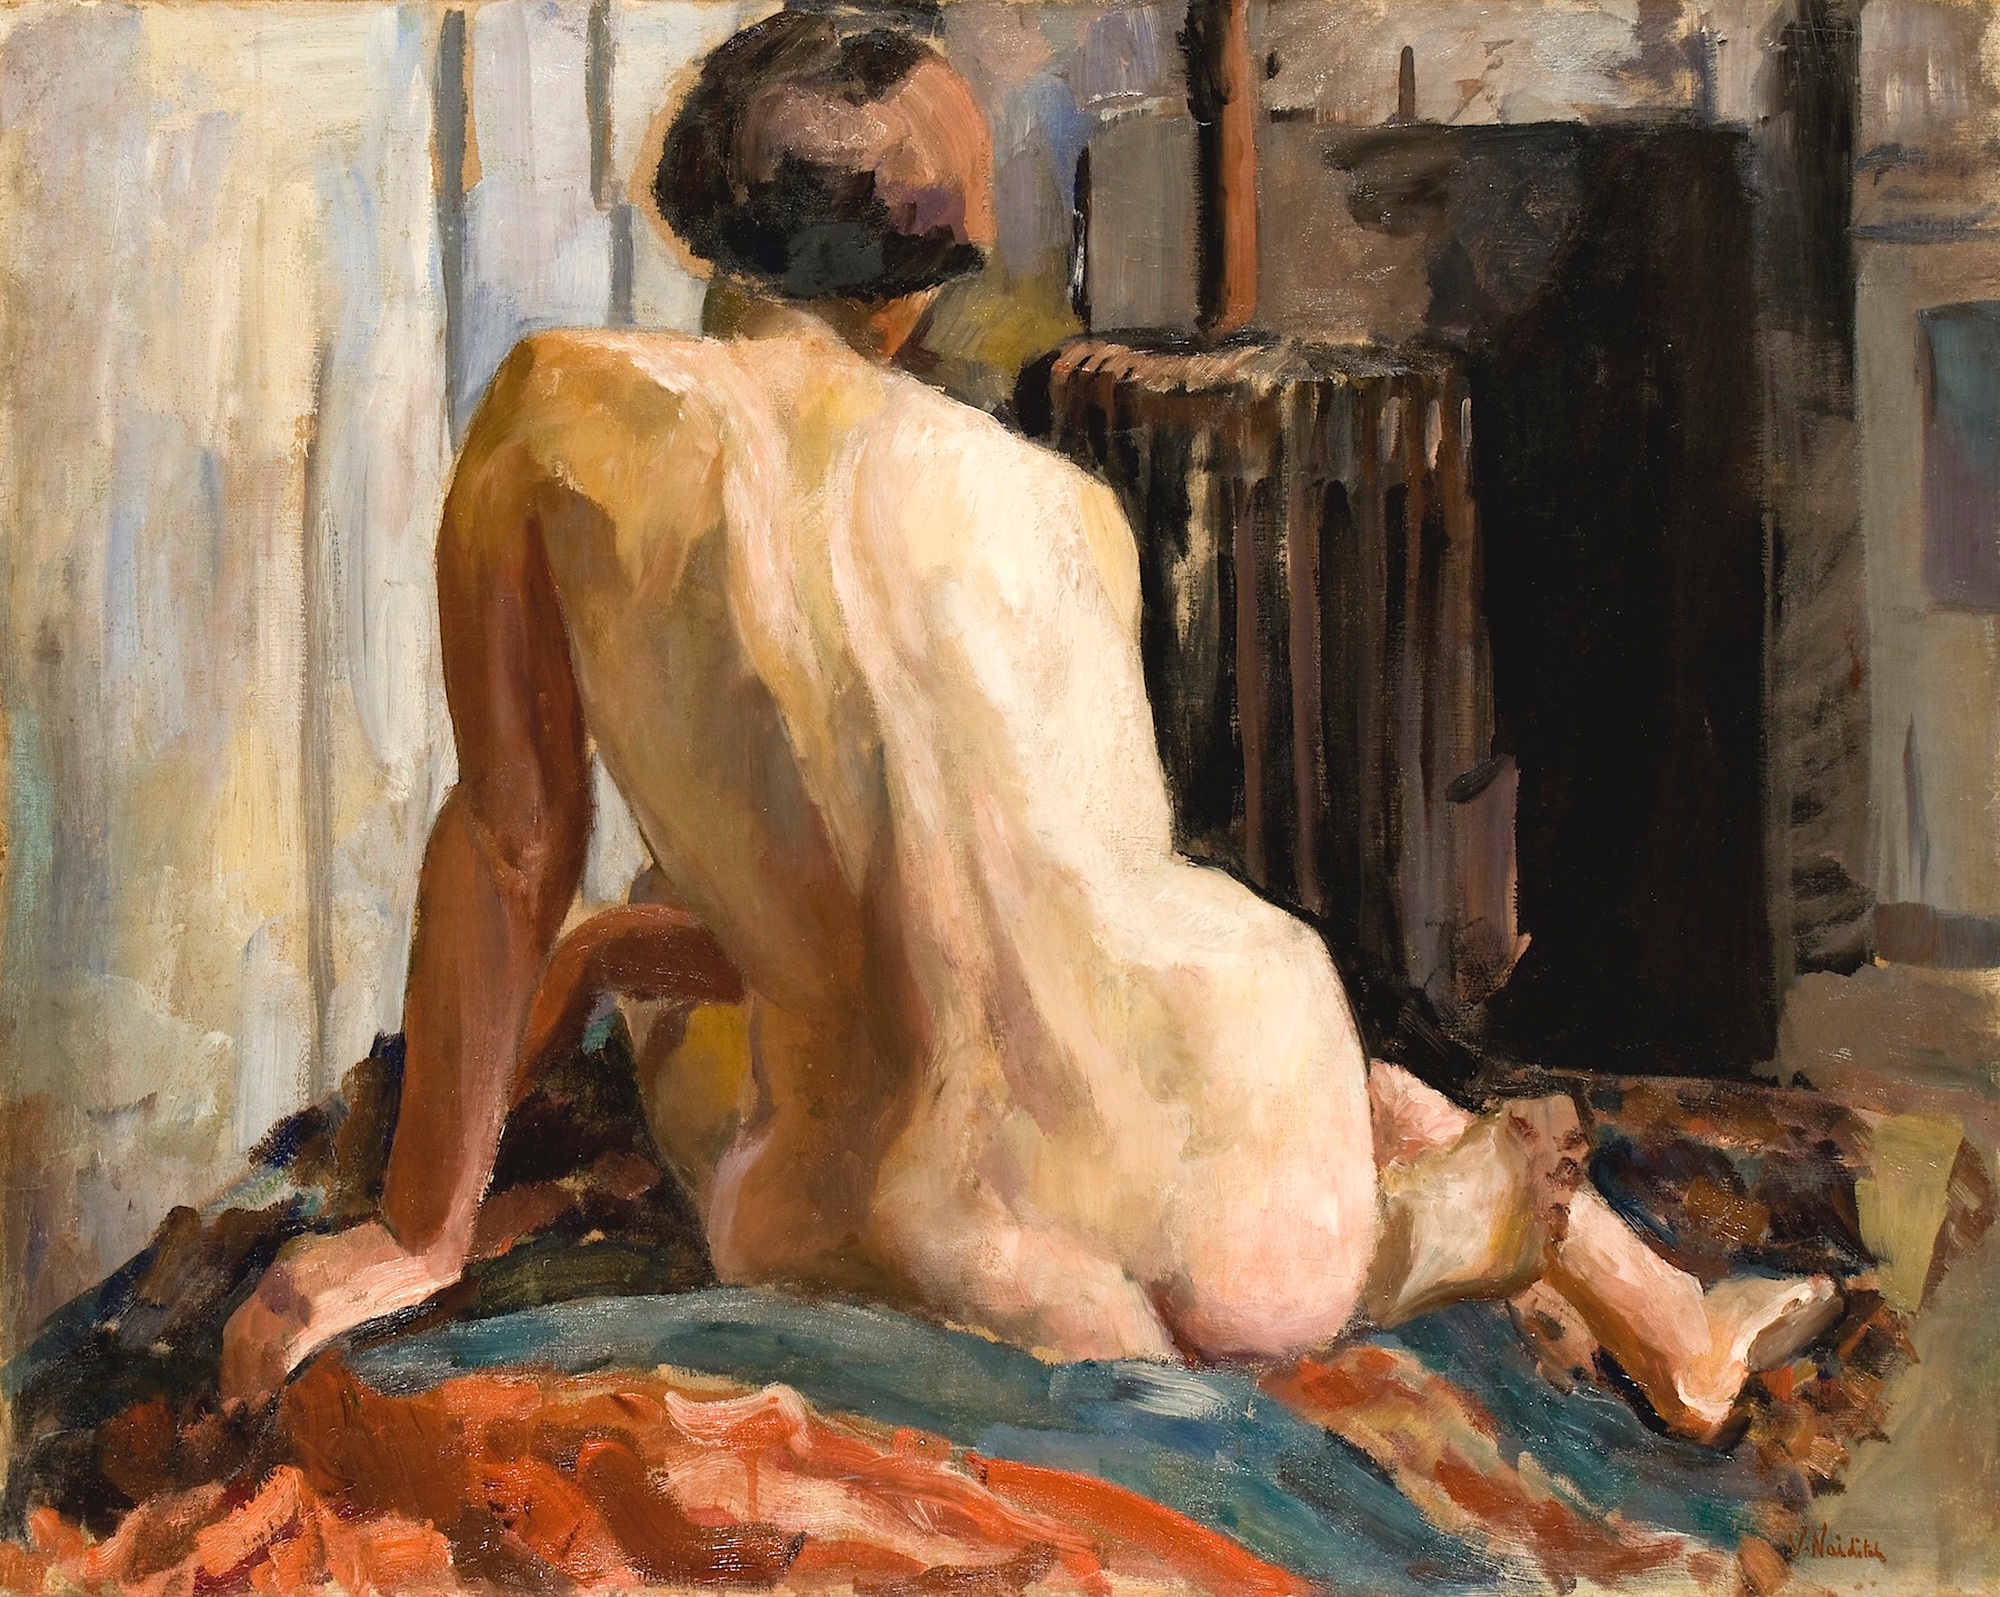 Nude in the Artist's Studio